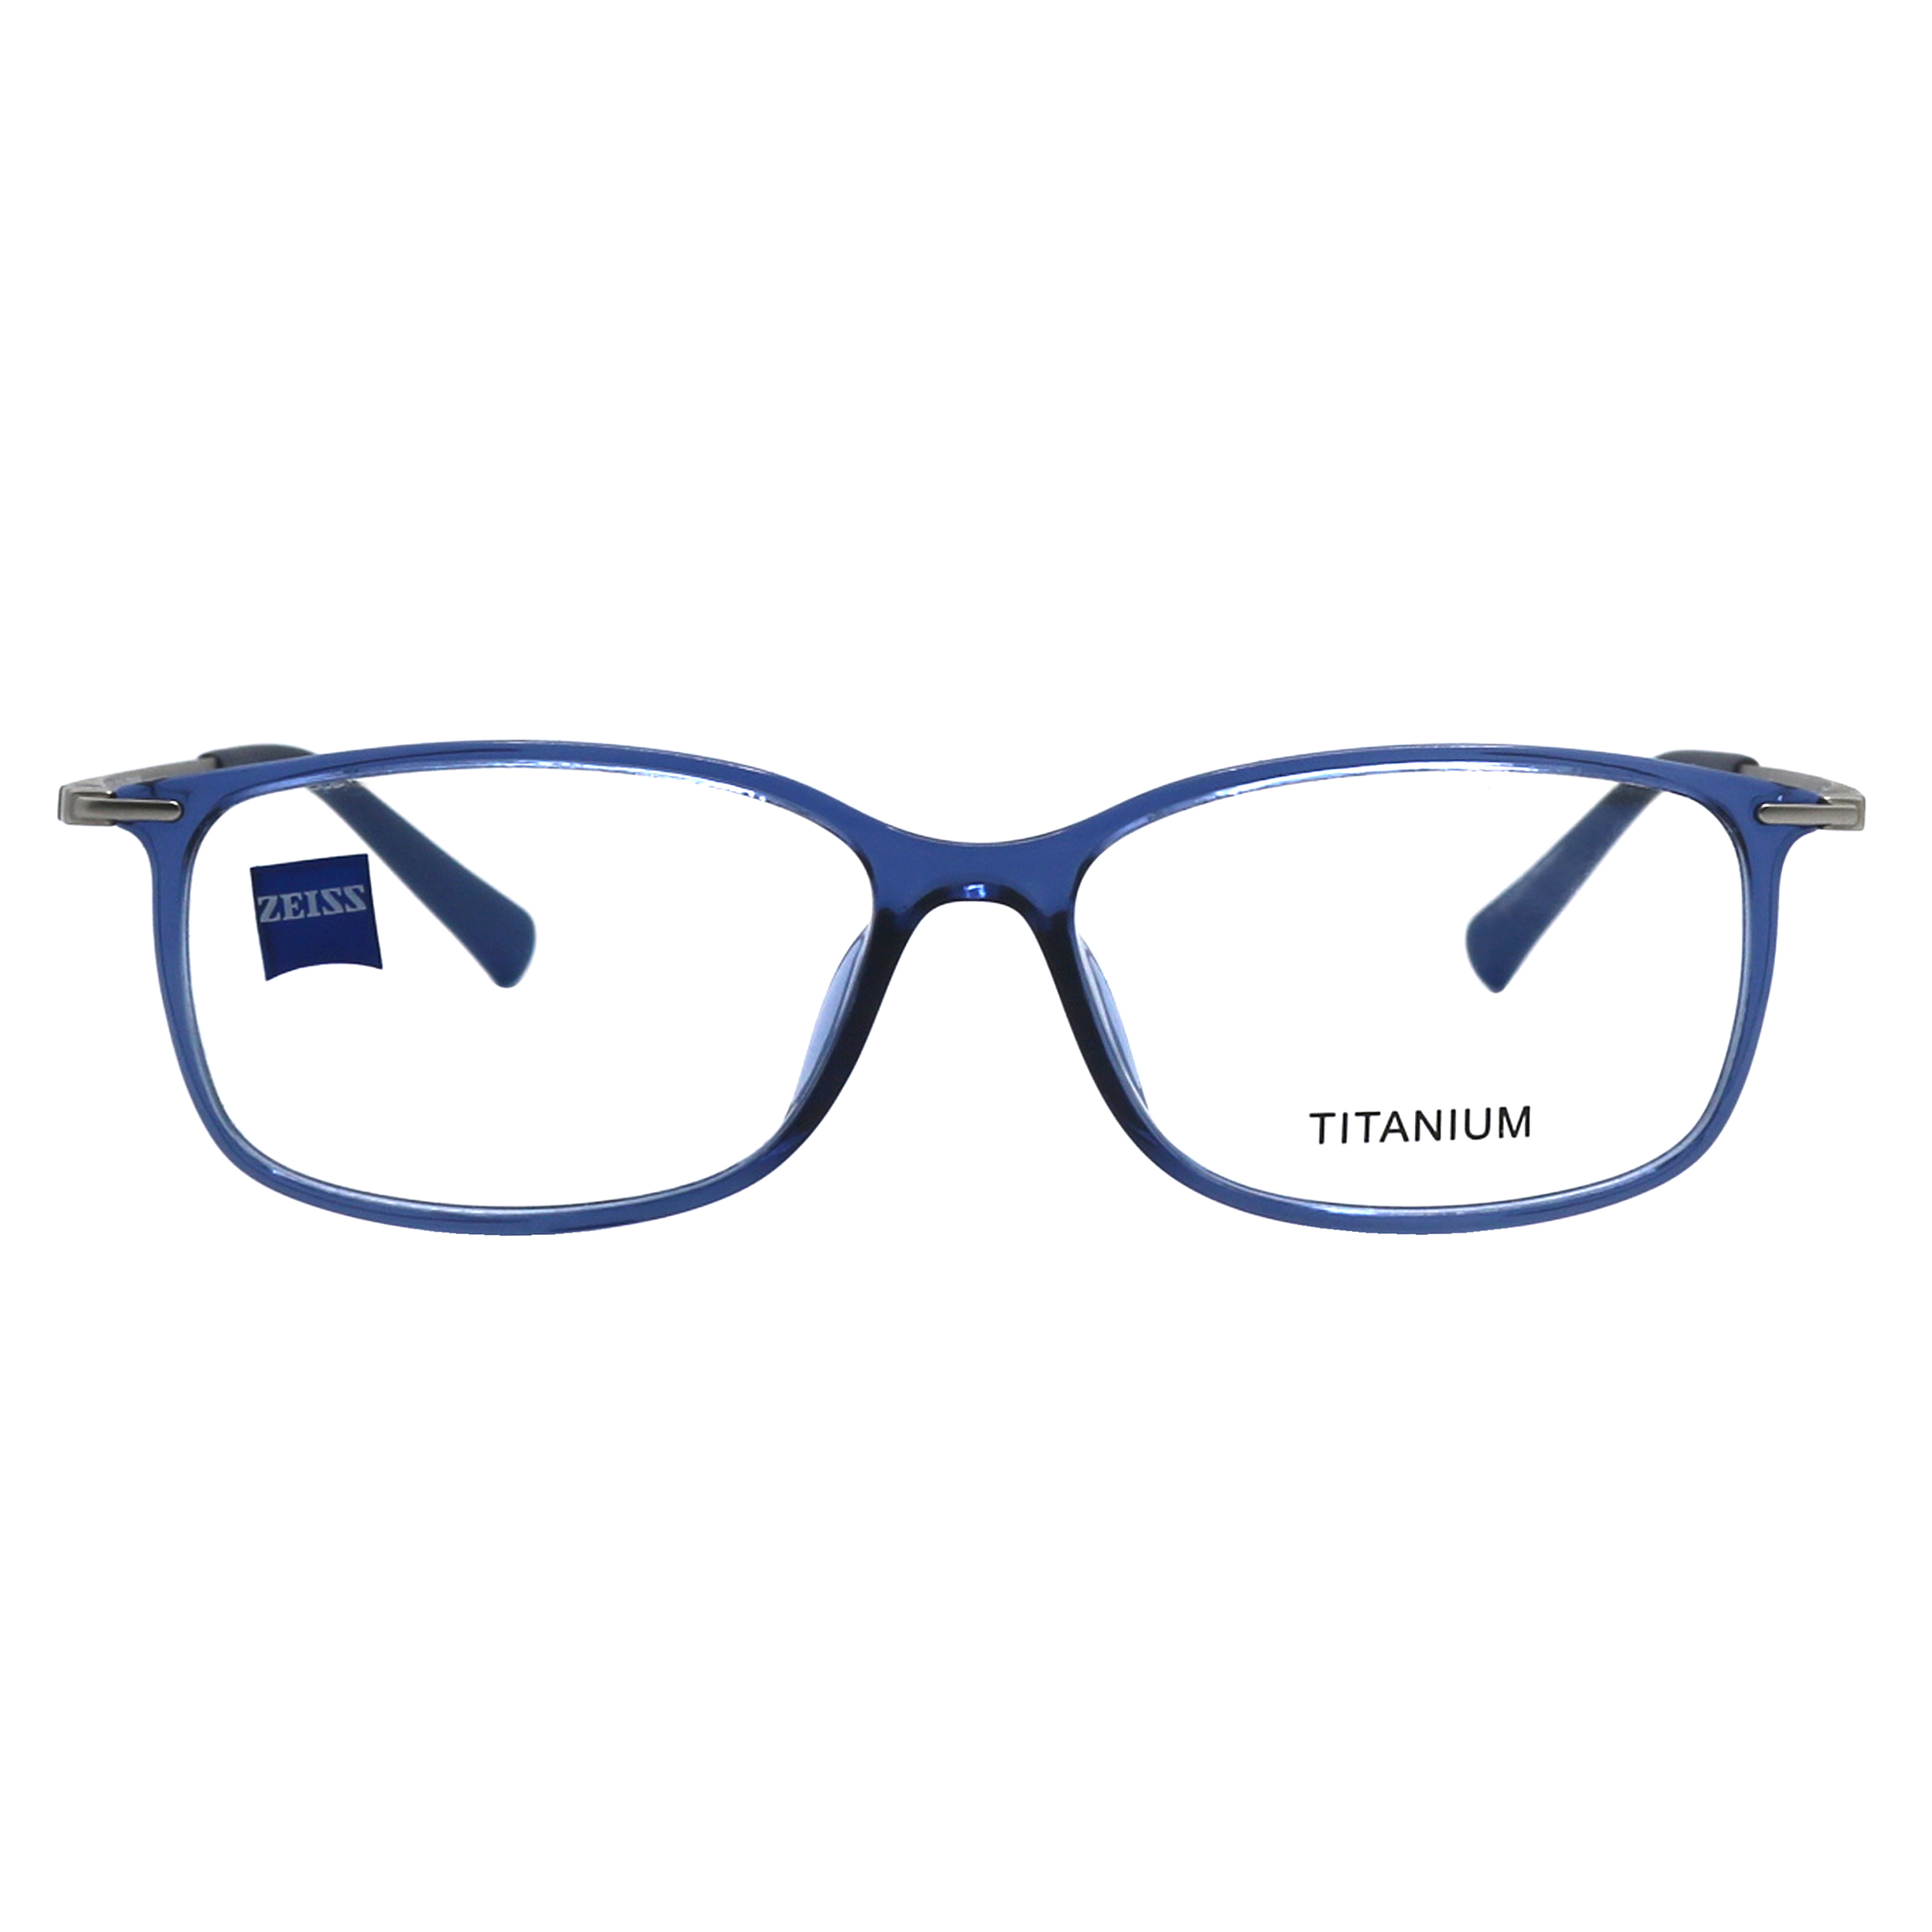 فریم عینک طبی زایس مدل 140-145